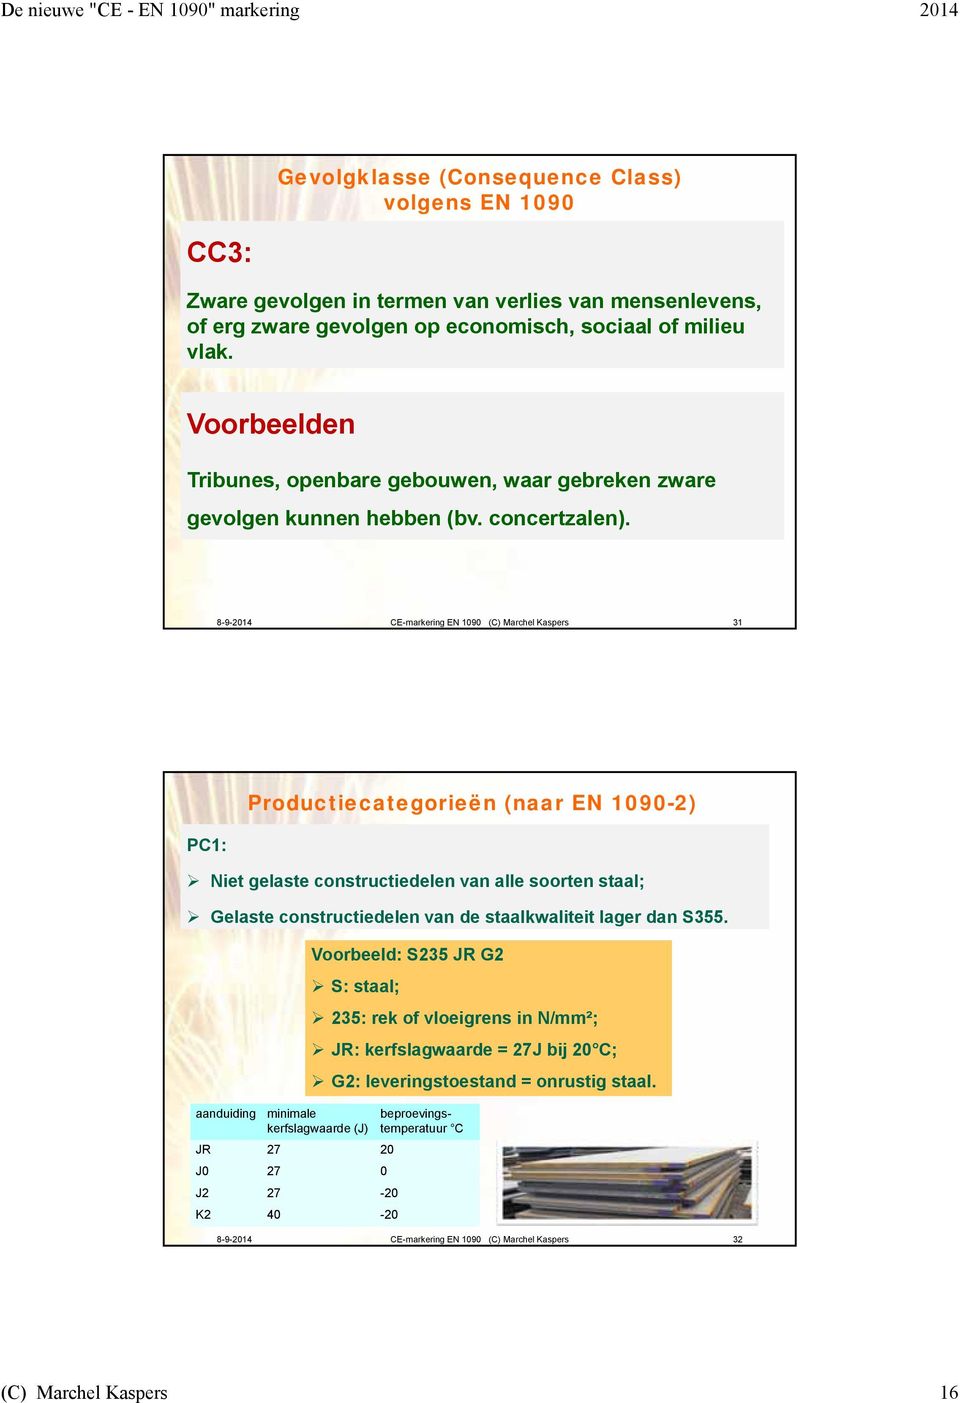 8-9-2014 CE-markering EN 1090 (C) Marchel Kaspers 31 PC1: Productiecategorieën (naar EN 1090-2) Niet gelaste constructiedelen van alle soorten staal; Gelaste constructiedelen van de staalkwaliteit